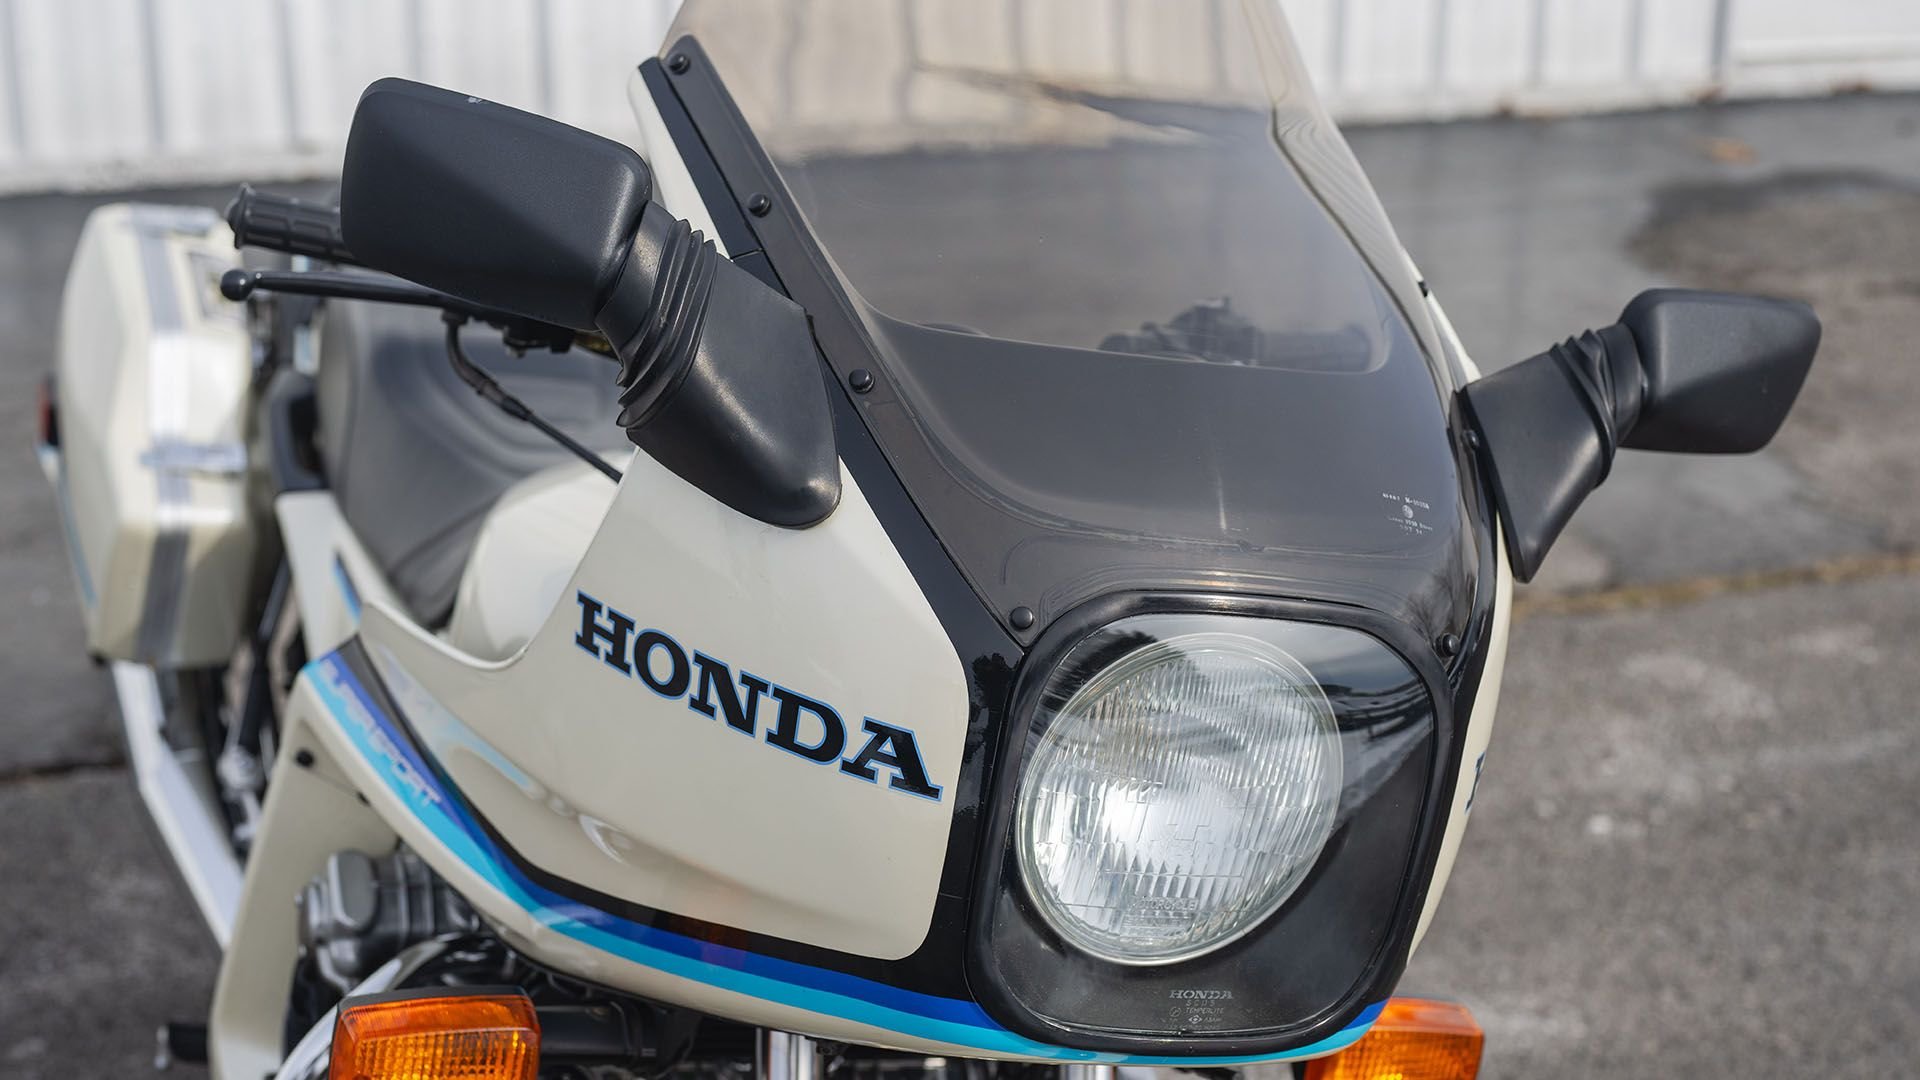 For Sale 1982 Honda CBX 1000 Super Sport